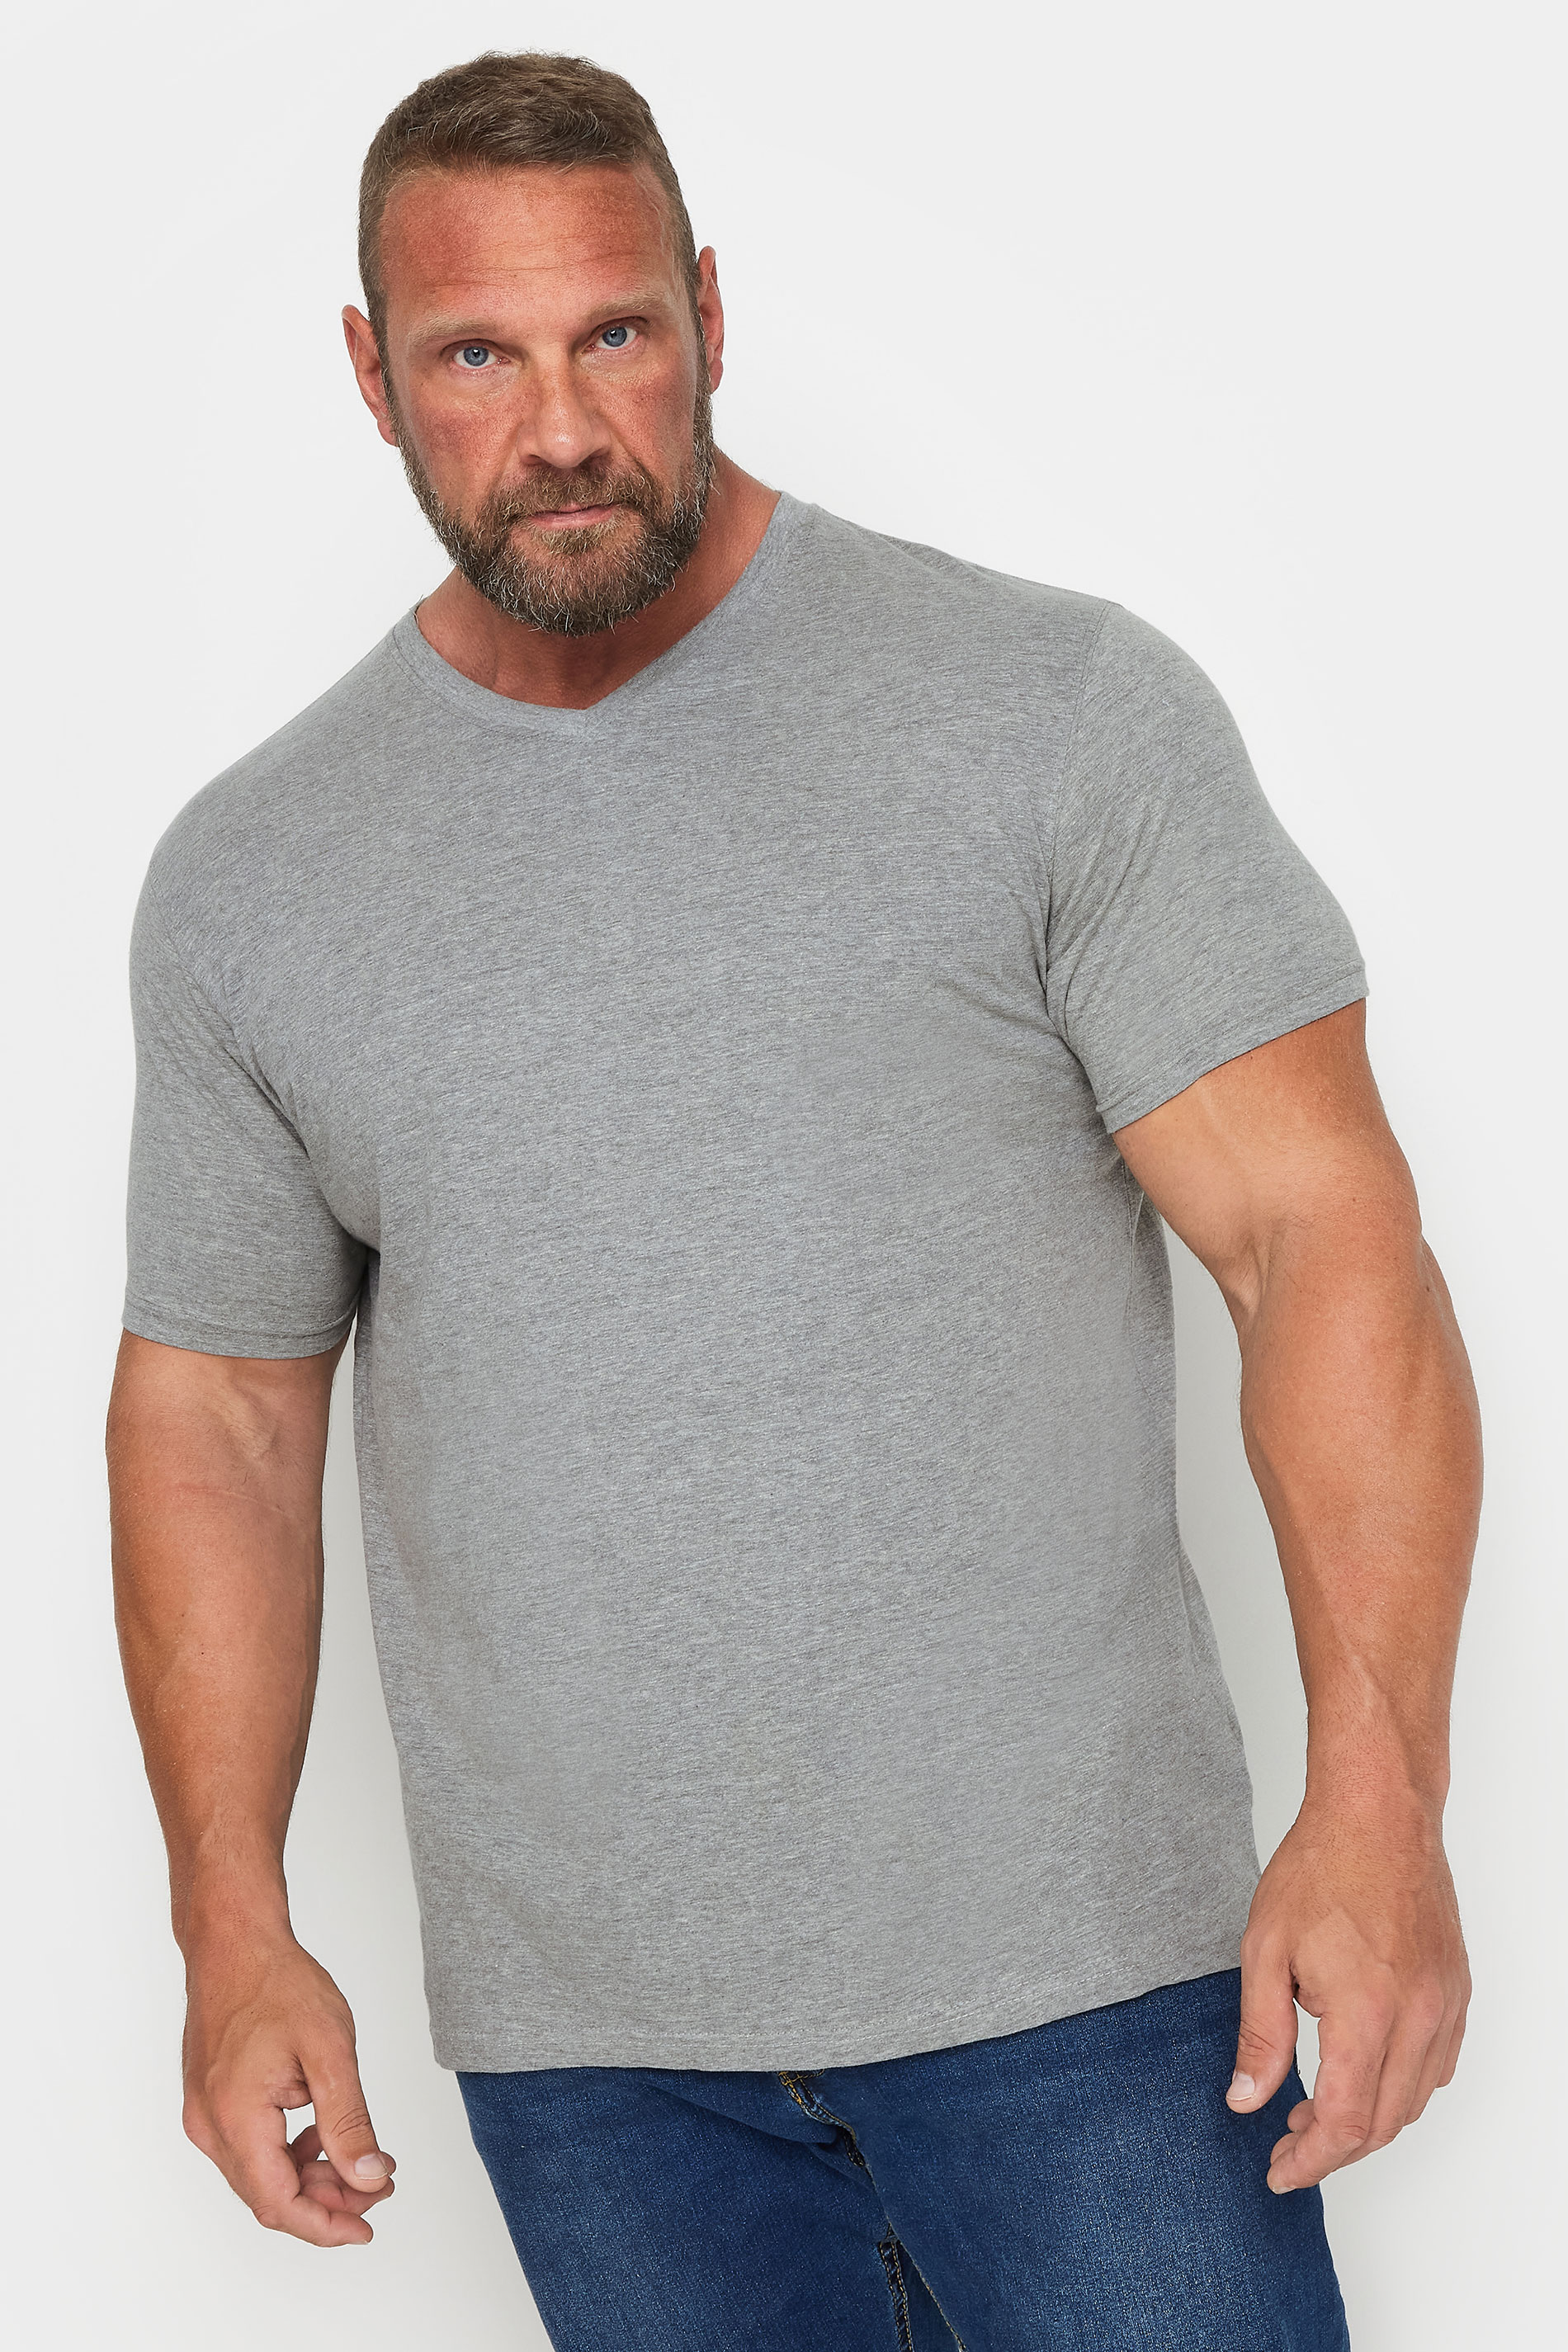 D555 Big & Tall Grey Premium V-Neck Combed Cotton T-Shirt | D555 1